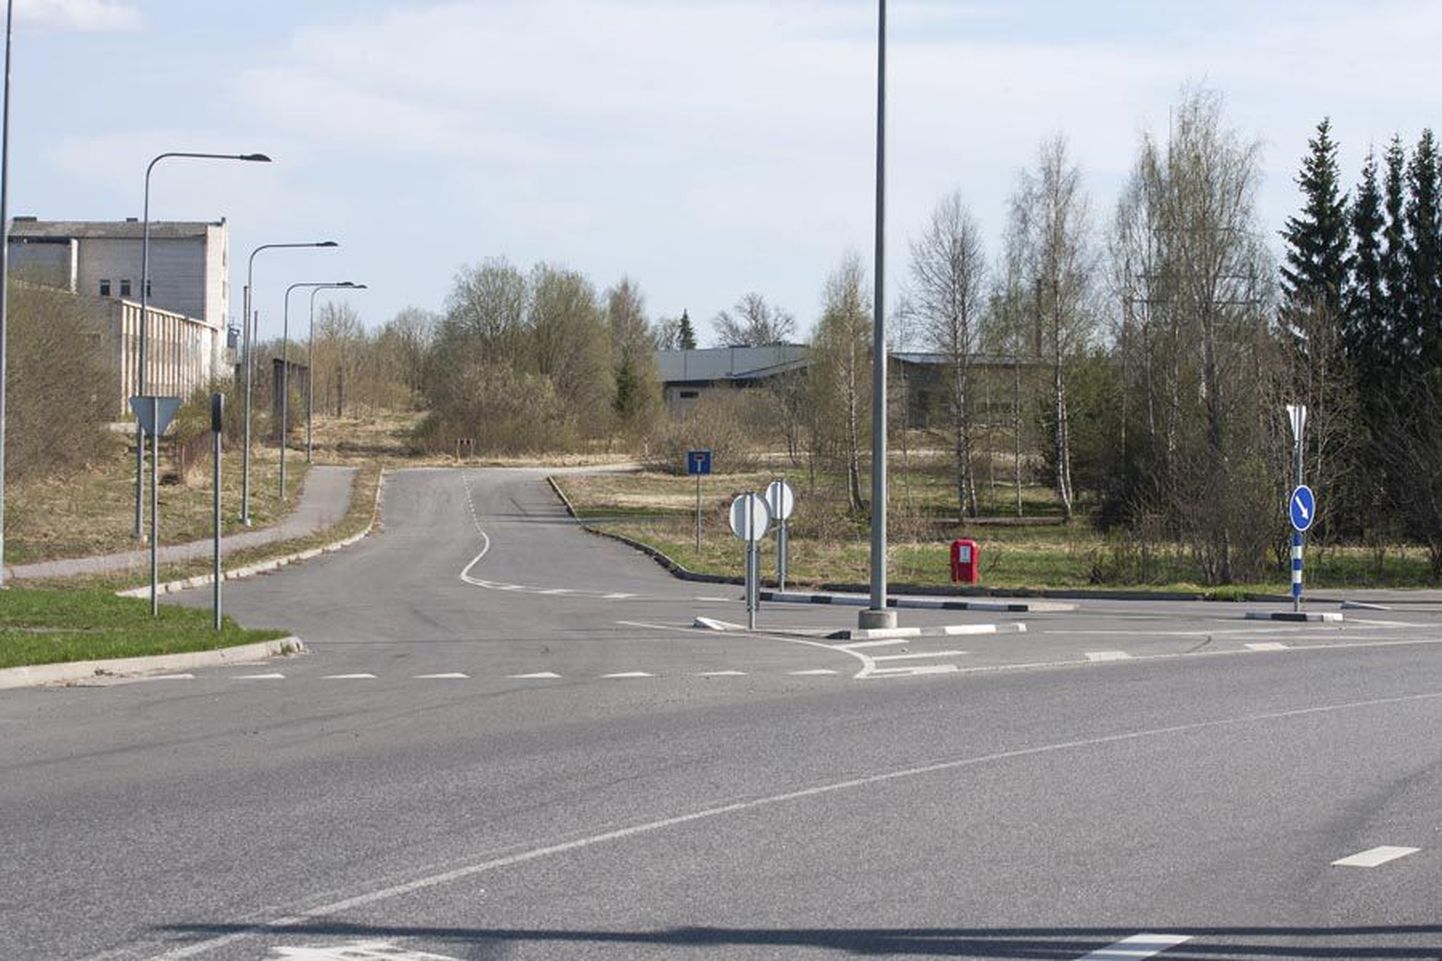 Neli aastat tagasi jäi Reinu tee ja Riia maantee vahelise tee ehitus seisma. Nüüd sai linn euroabi, et ühendustee aasta lõpuks valmis teha.